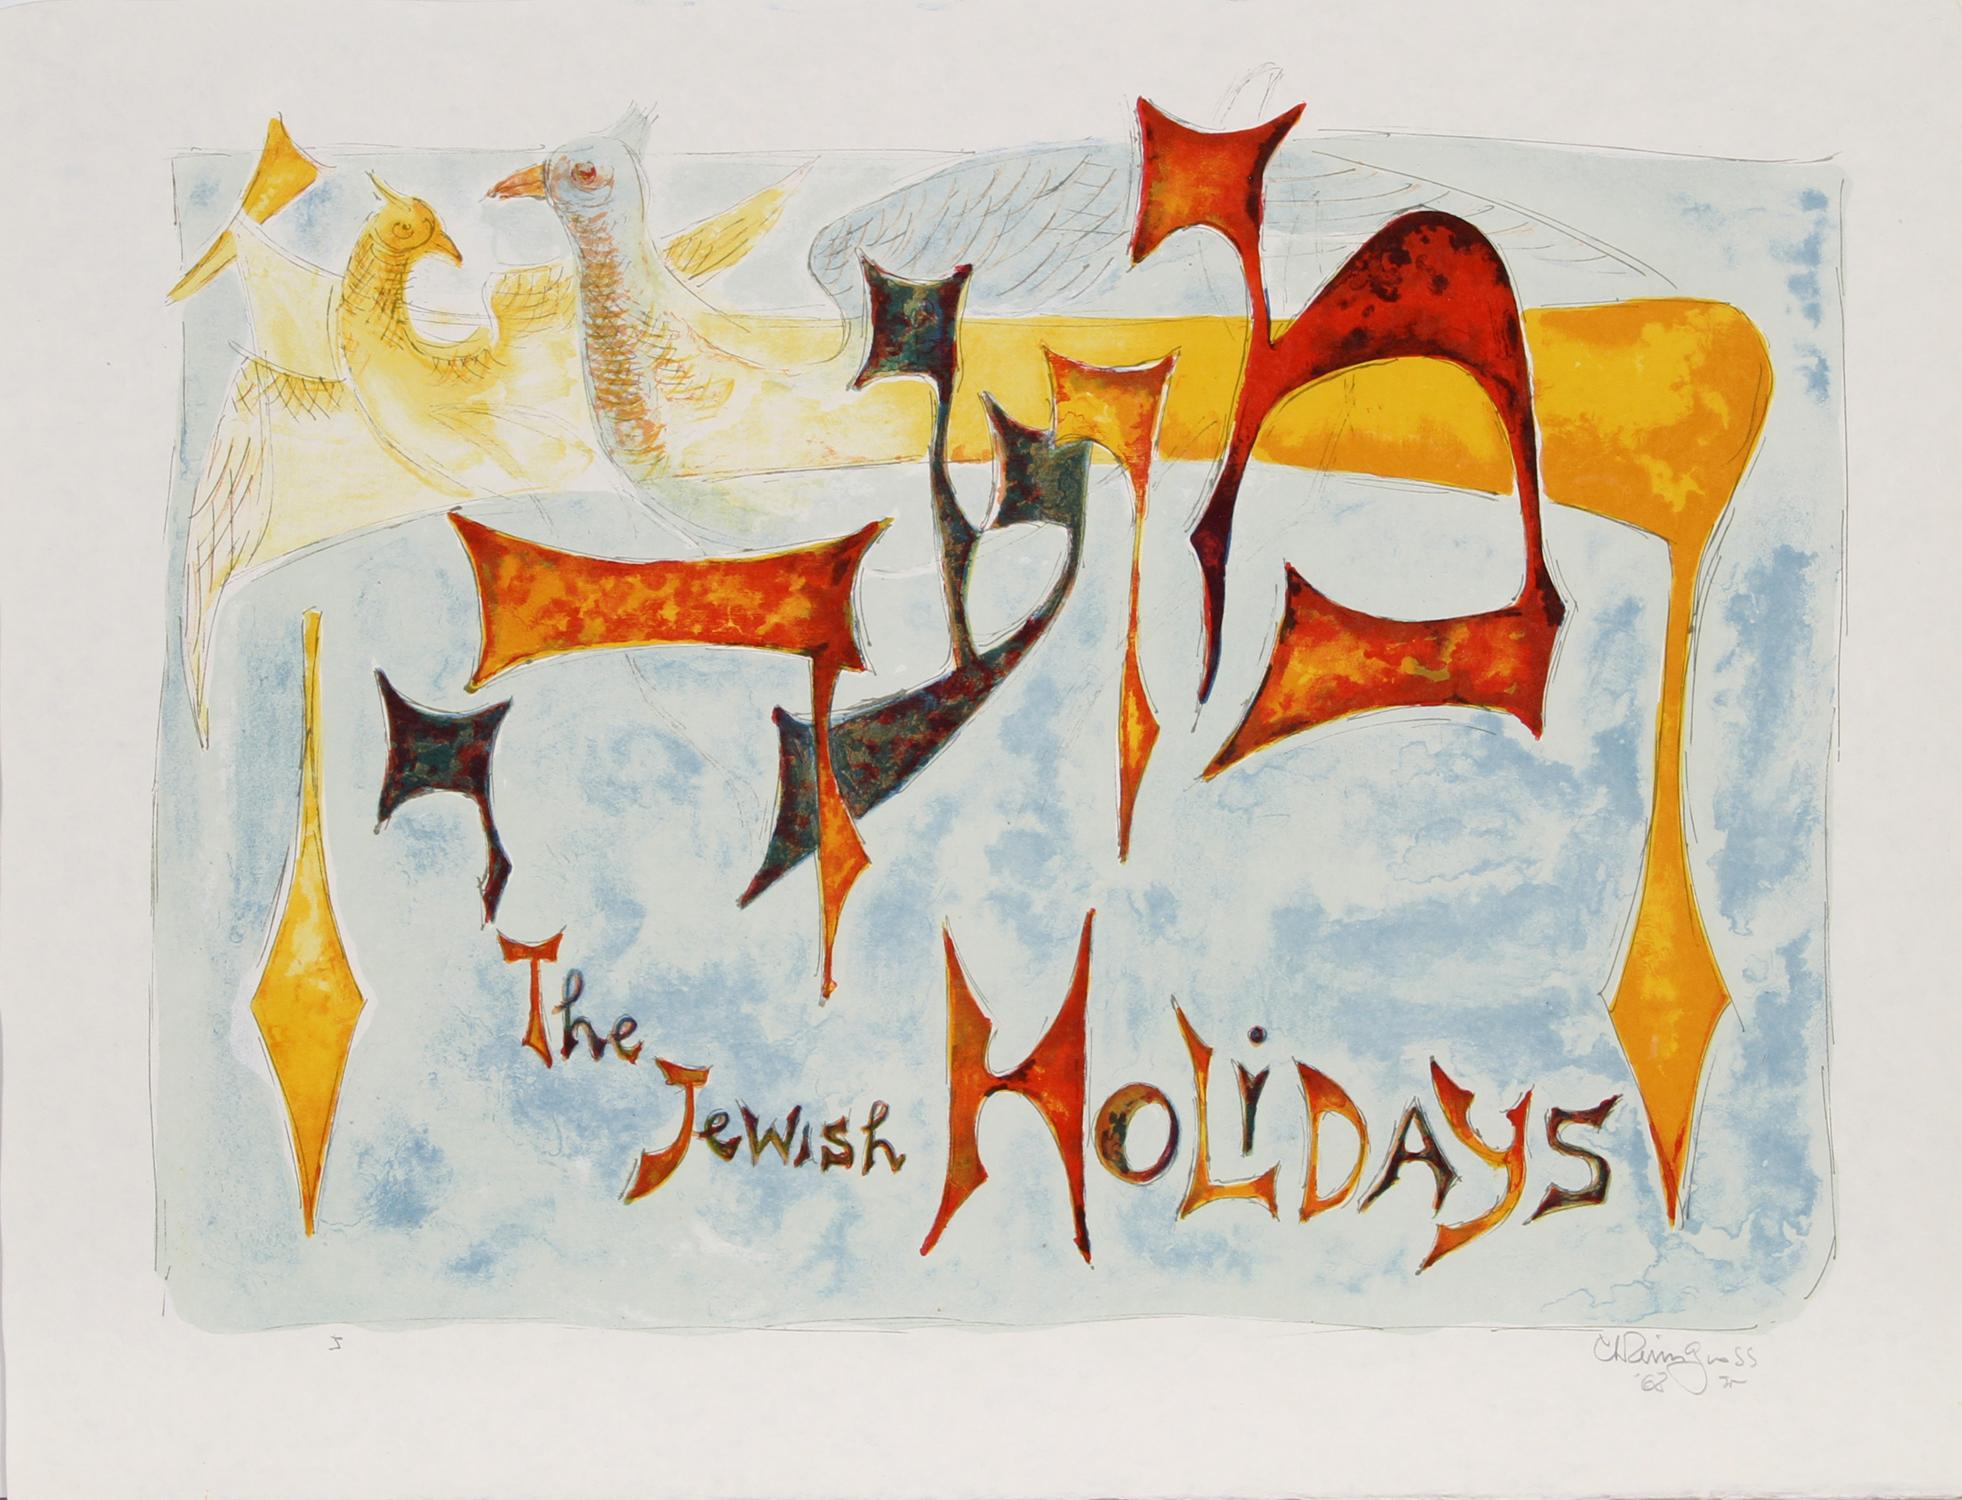 Le portefeuille des fêtes juives par Chaim Gross.  Ce portfolio comprend 11 lithographies en couleur et 11 lithographies en noir et blanc des mêmes images représentant 11 des fêtes juives, ainsi que des pages de garde et un colophon.  Chacun des